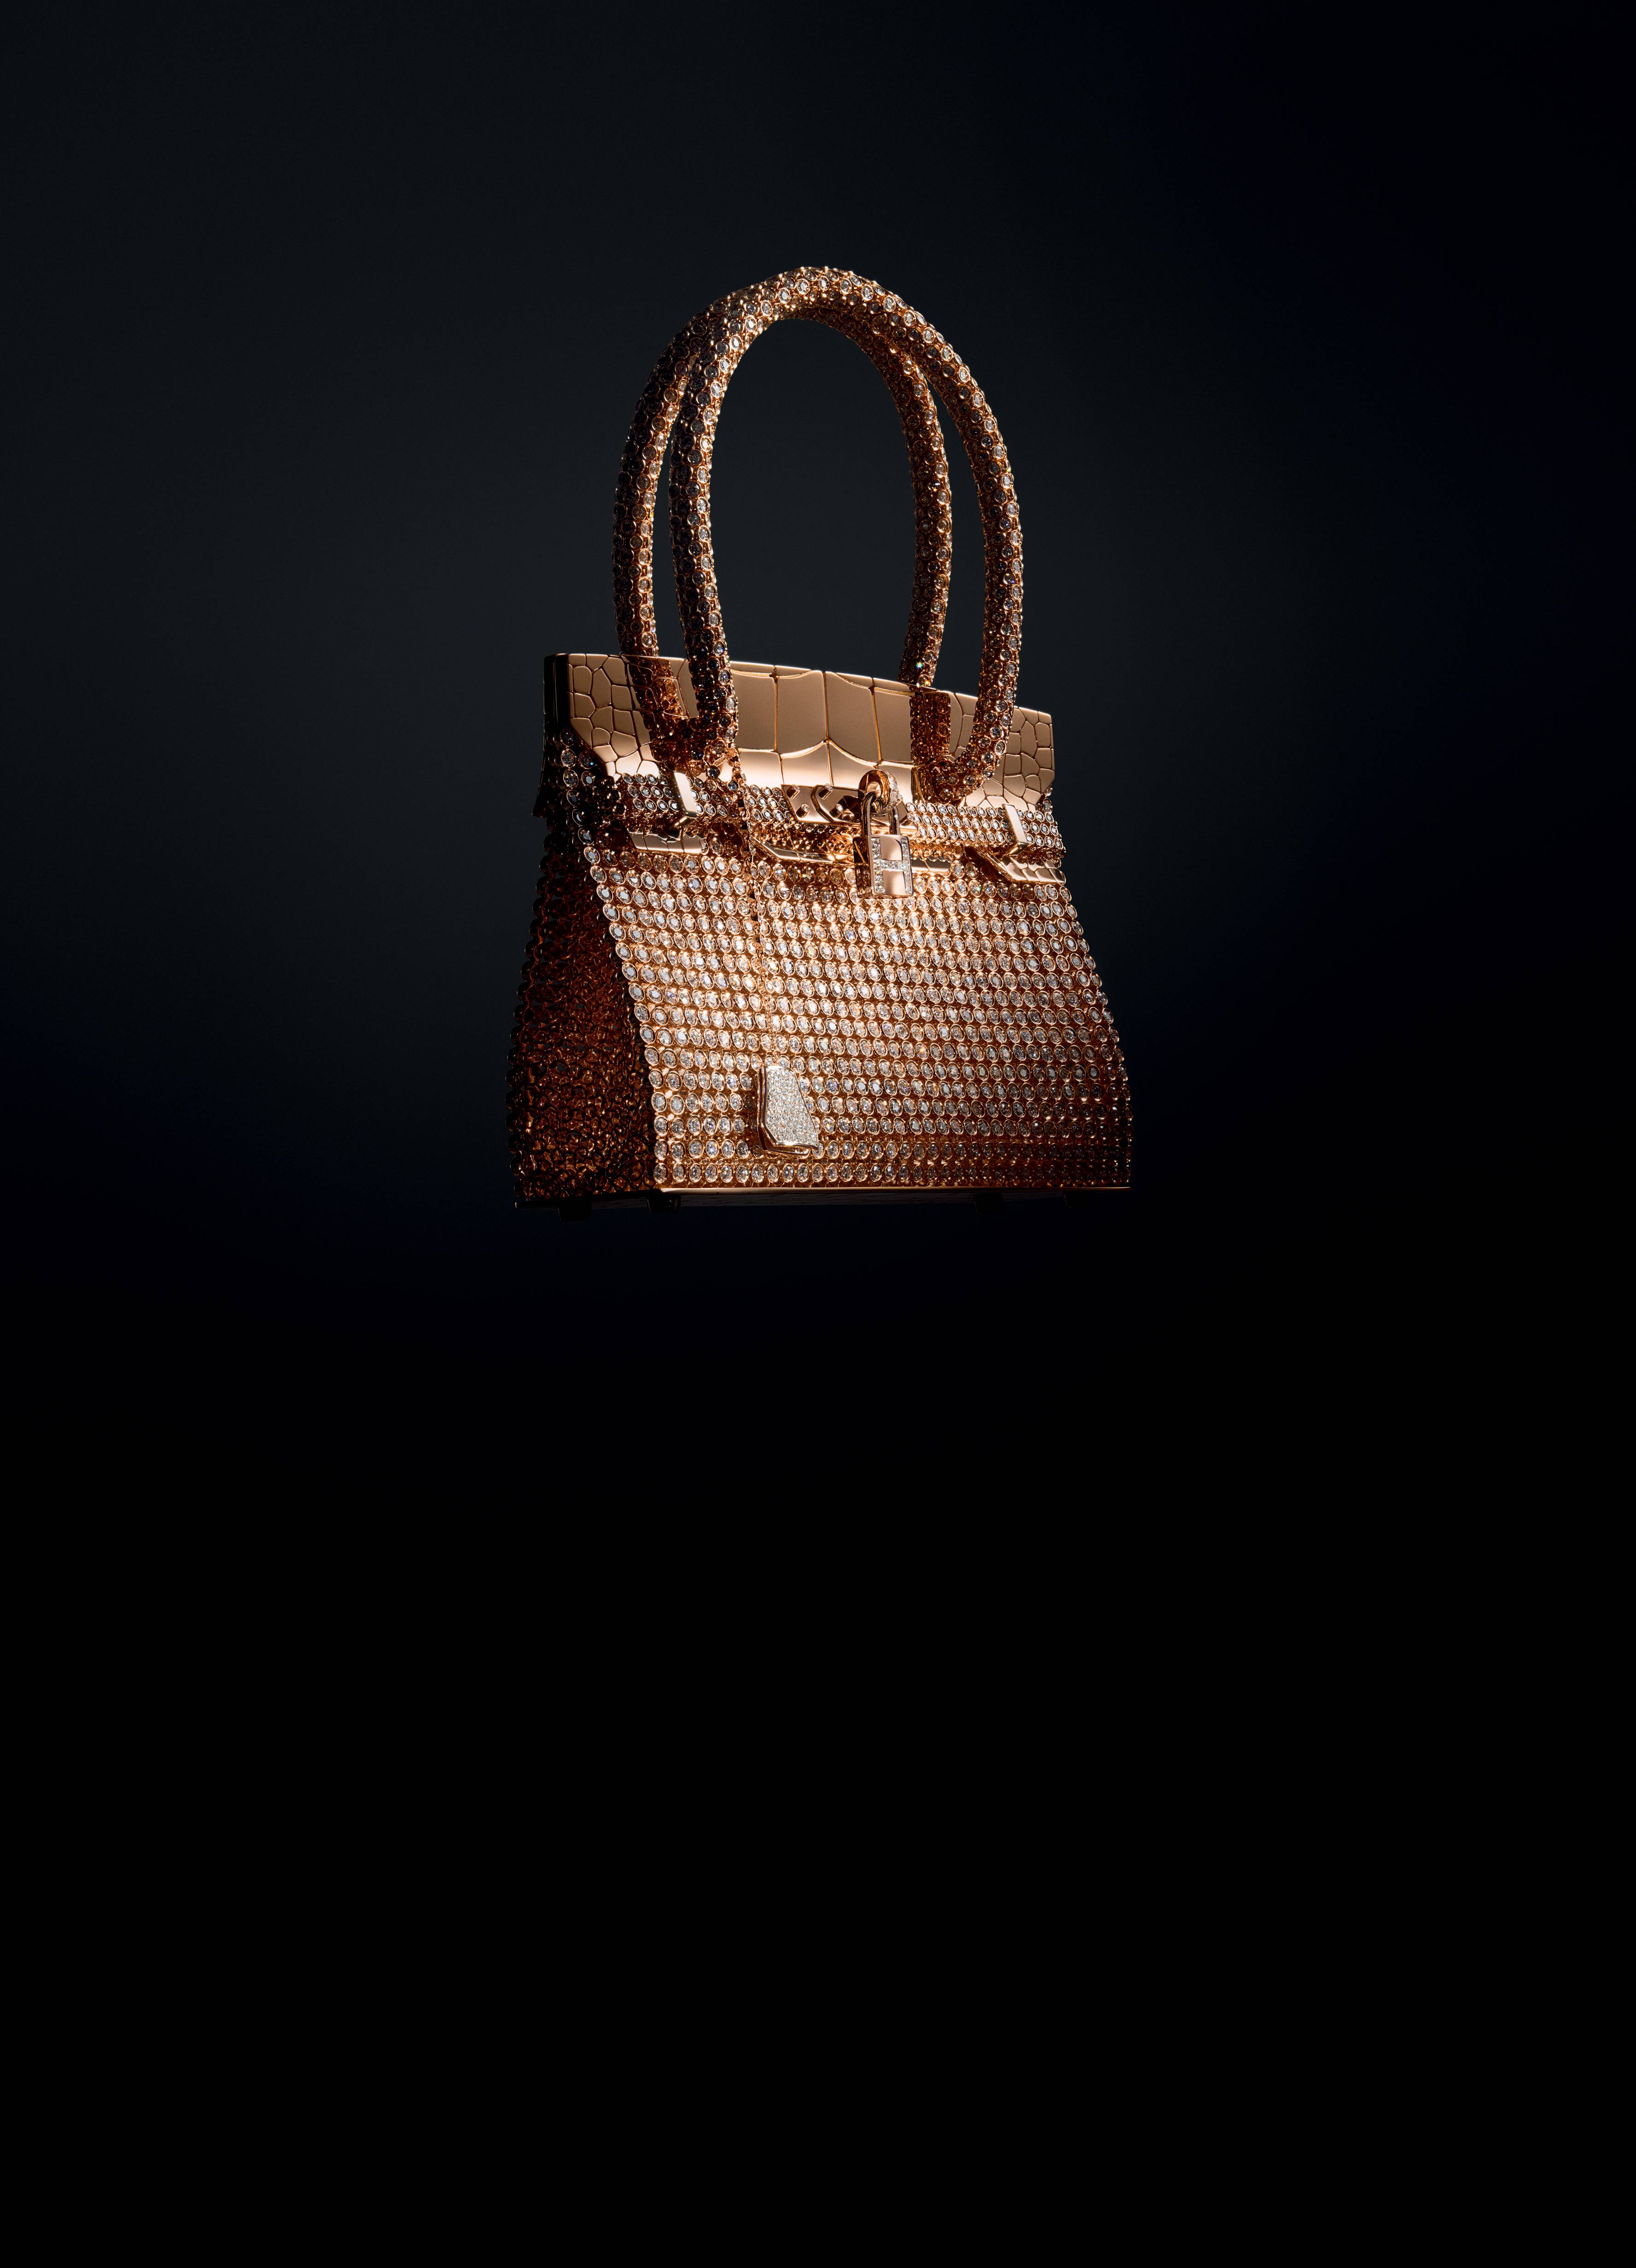 In 2012, Hermès introduced the Sac Bijou Birkin, it's most